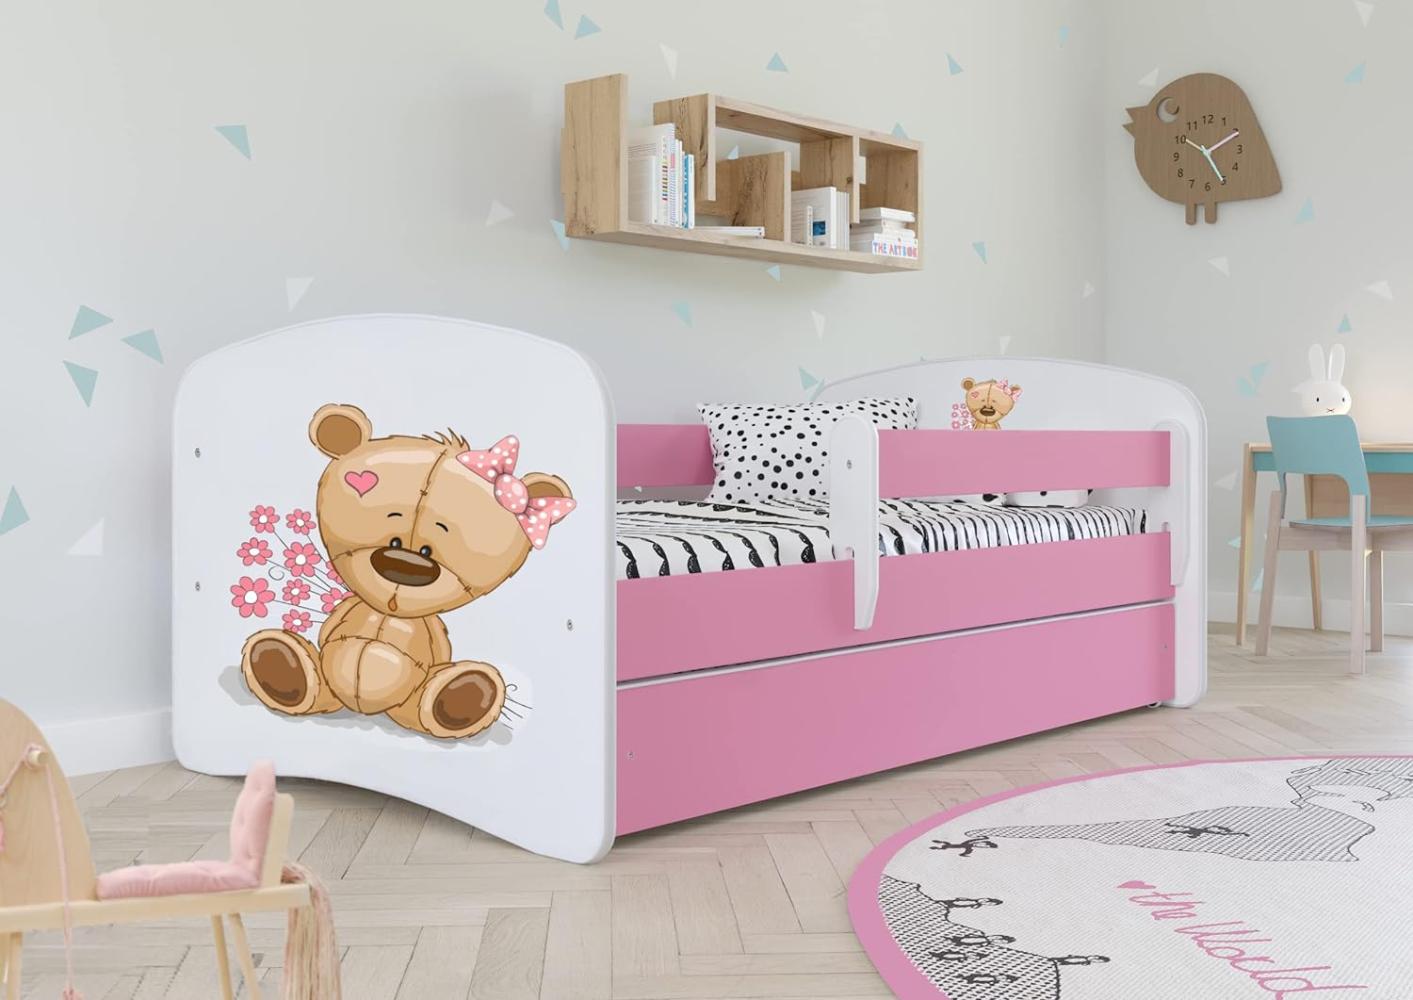 Kocot Kids 'teddybär mit Blumen' Einzelbett pink 70x140 cm inkl. Rausfallschutz, Matratze, Schublade und Lattenrost Bild 1